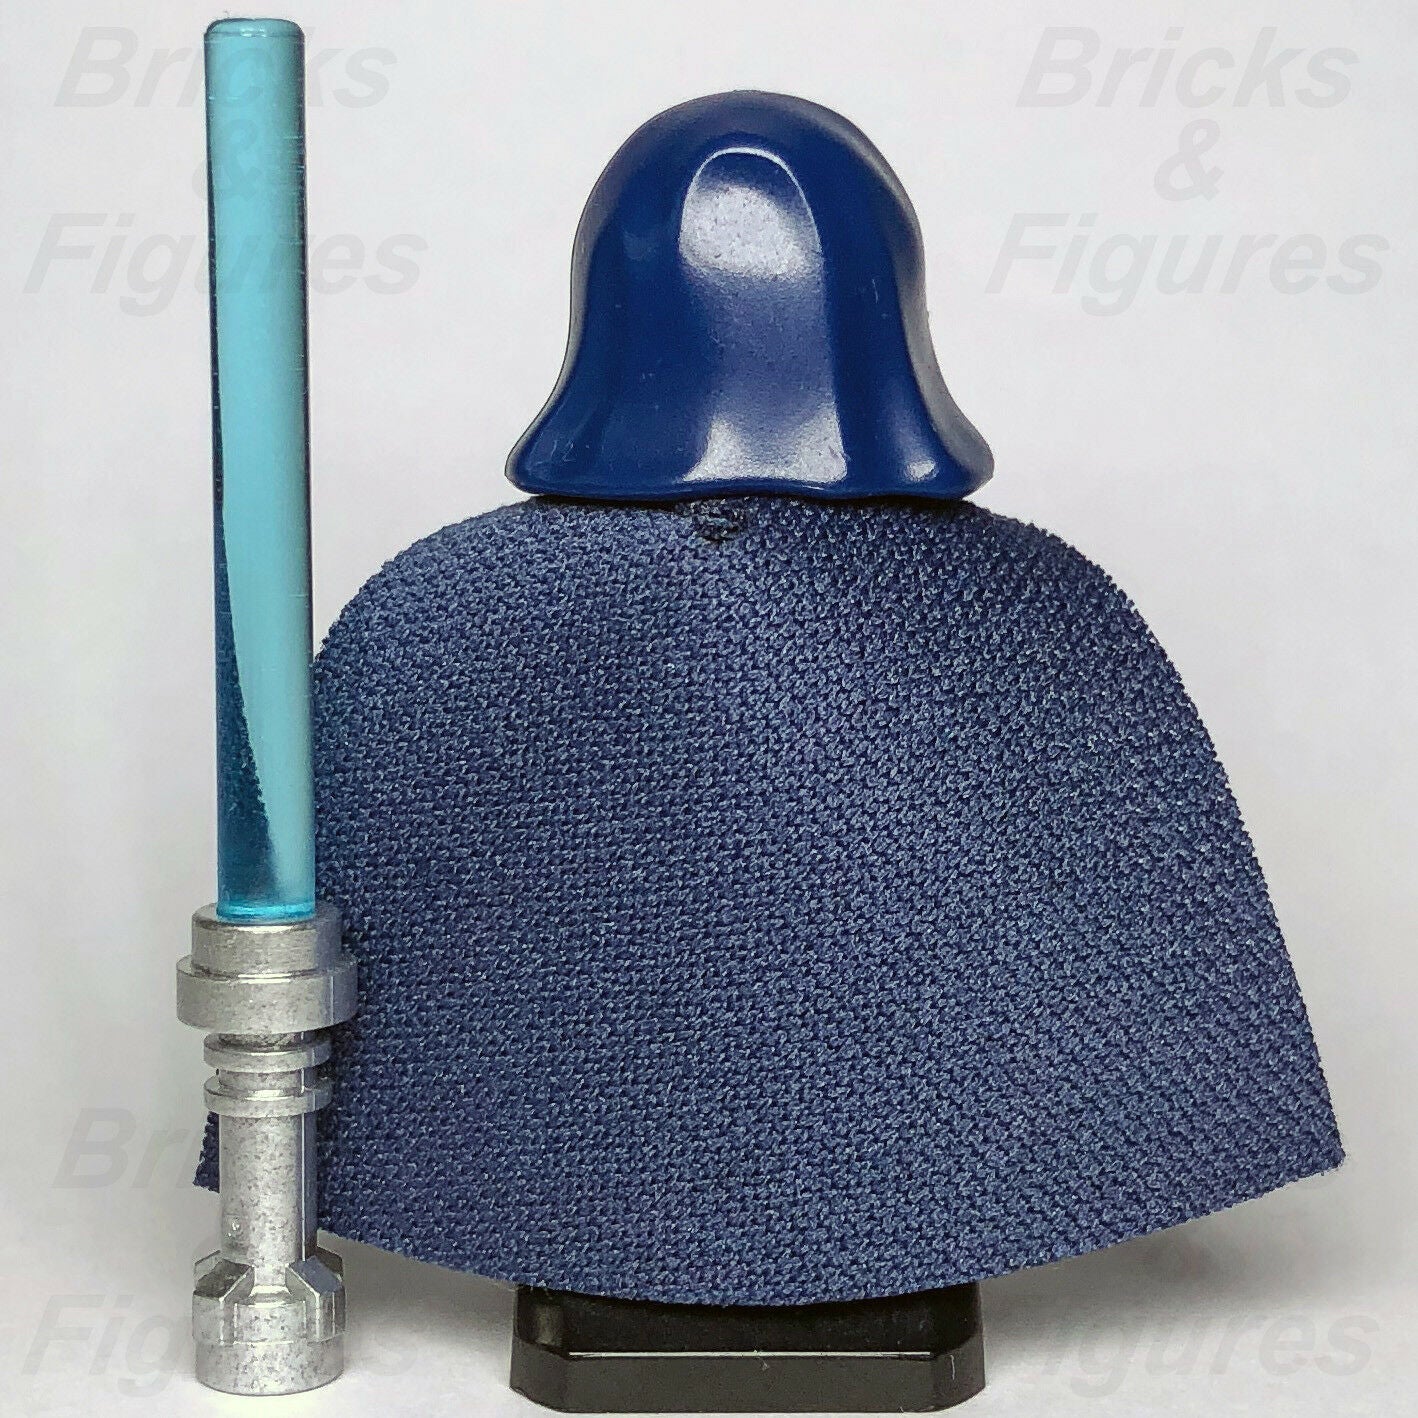 New Star Wars LEGO Barriss Offee Jedi Padawan Clone Wars Minifigure 75206 - Bricks & Figures